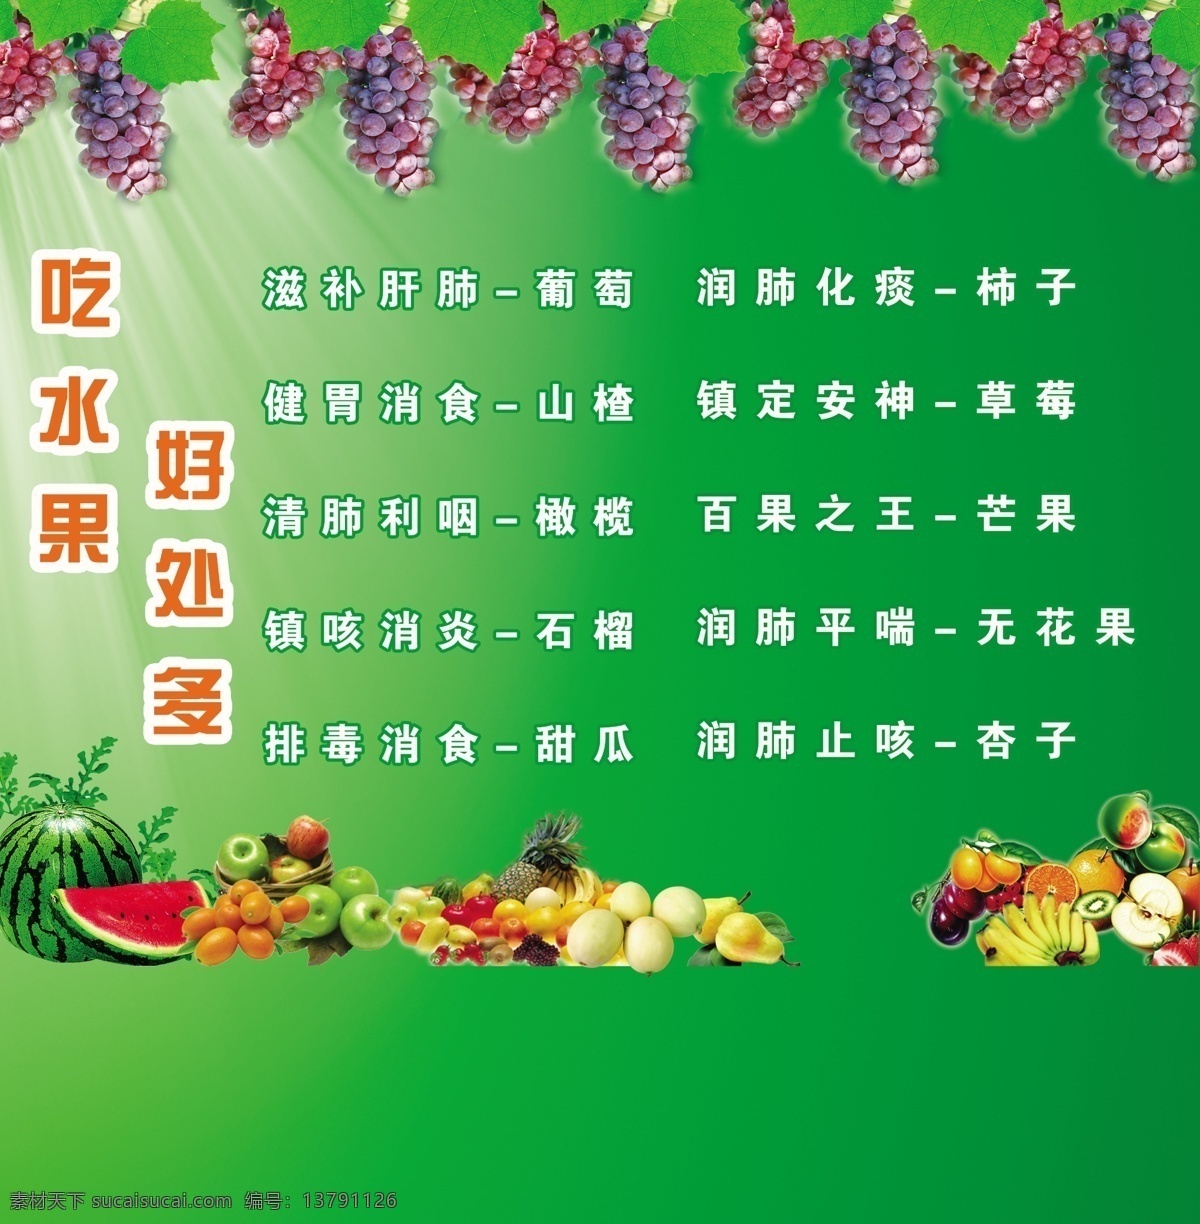 吃水果 好处多 苹果 葡萄 西柚 广告设计模板 源文件